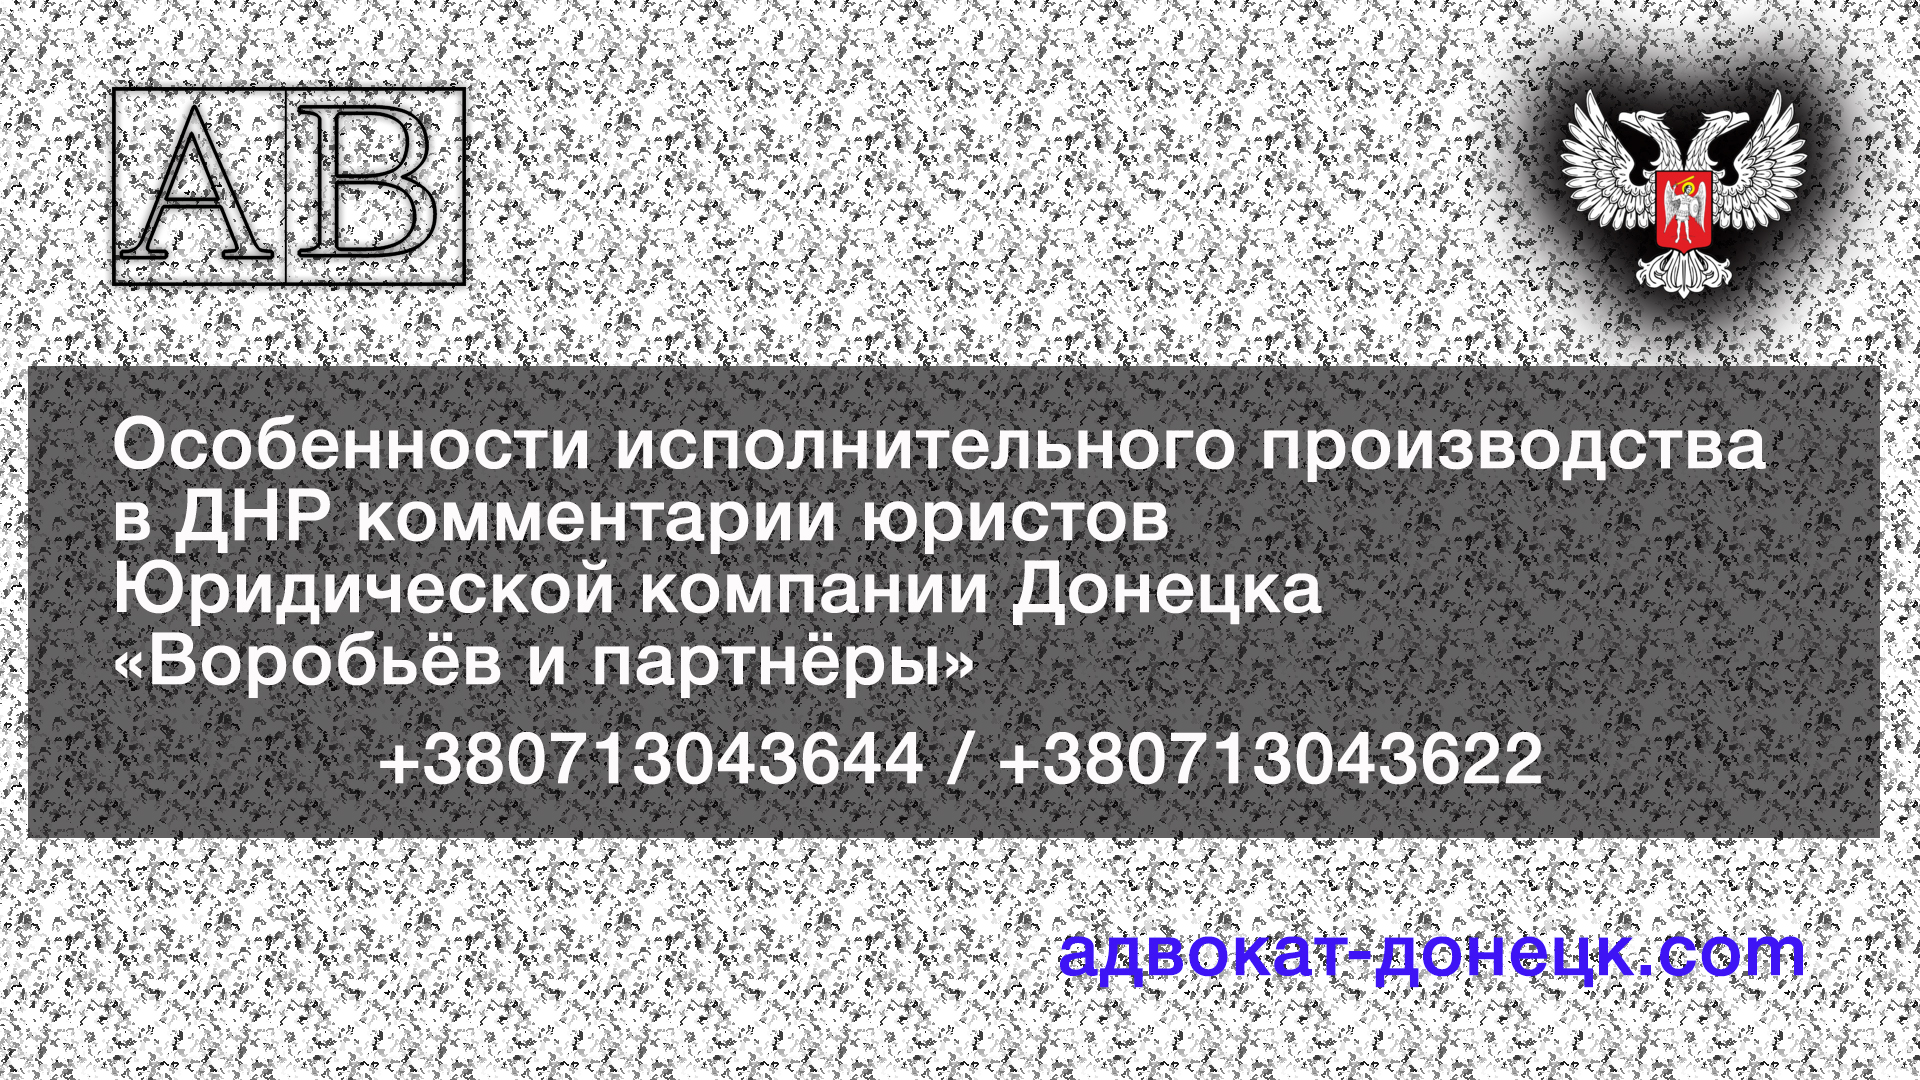 Особенности исполнения решения суда ОГИС ДНР Донецк на сайте адвокатов ДНР